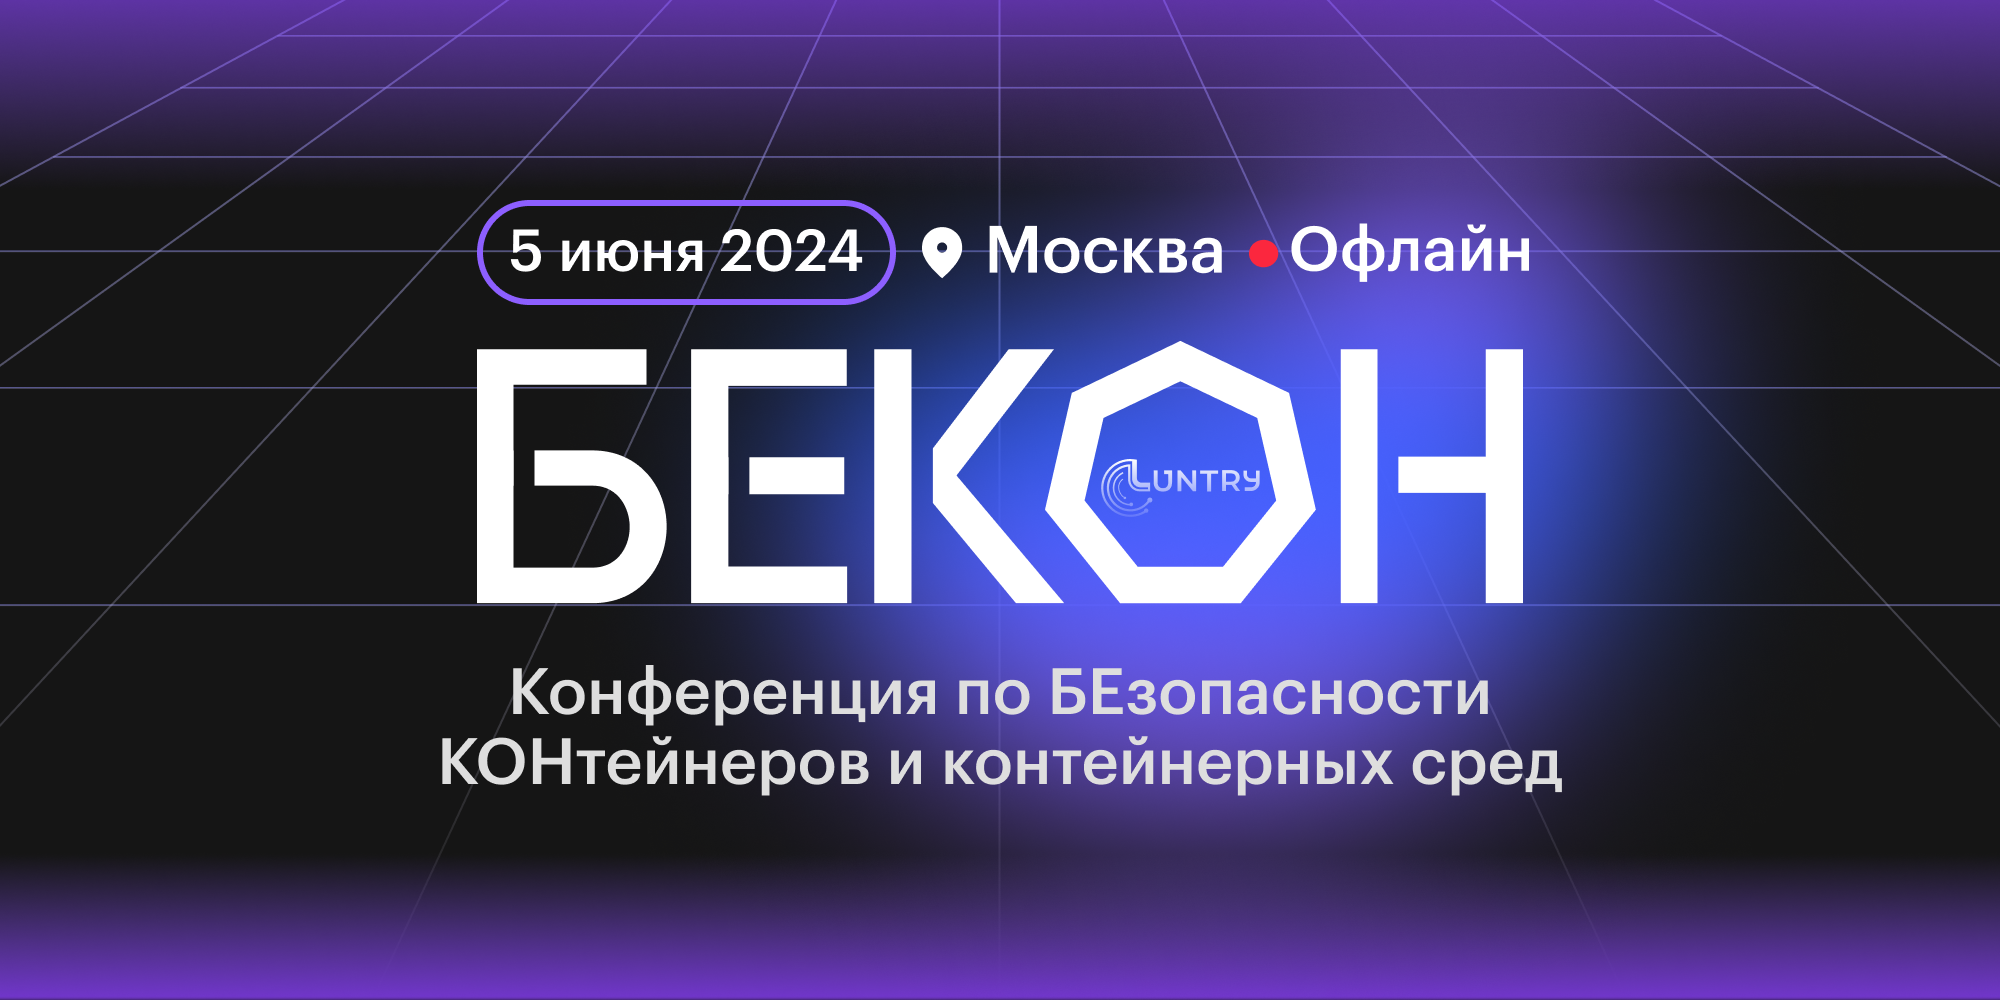 В Москве пройдет конференция для специалистов по безопасности контейнерных сред «БЕКОН»